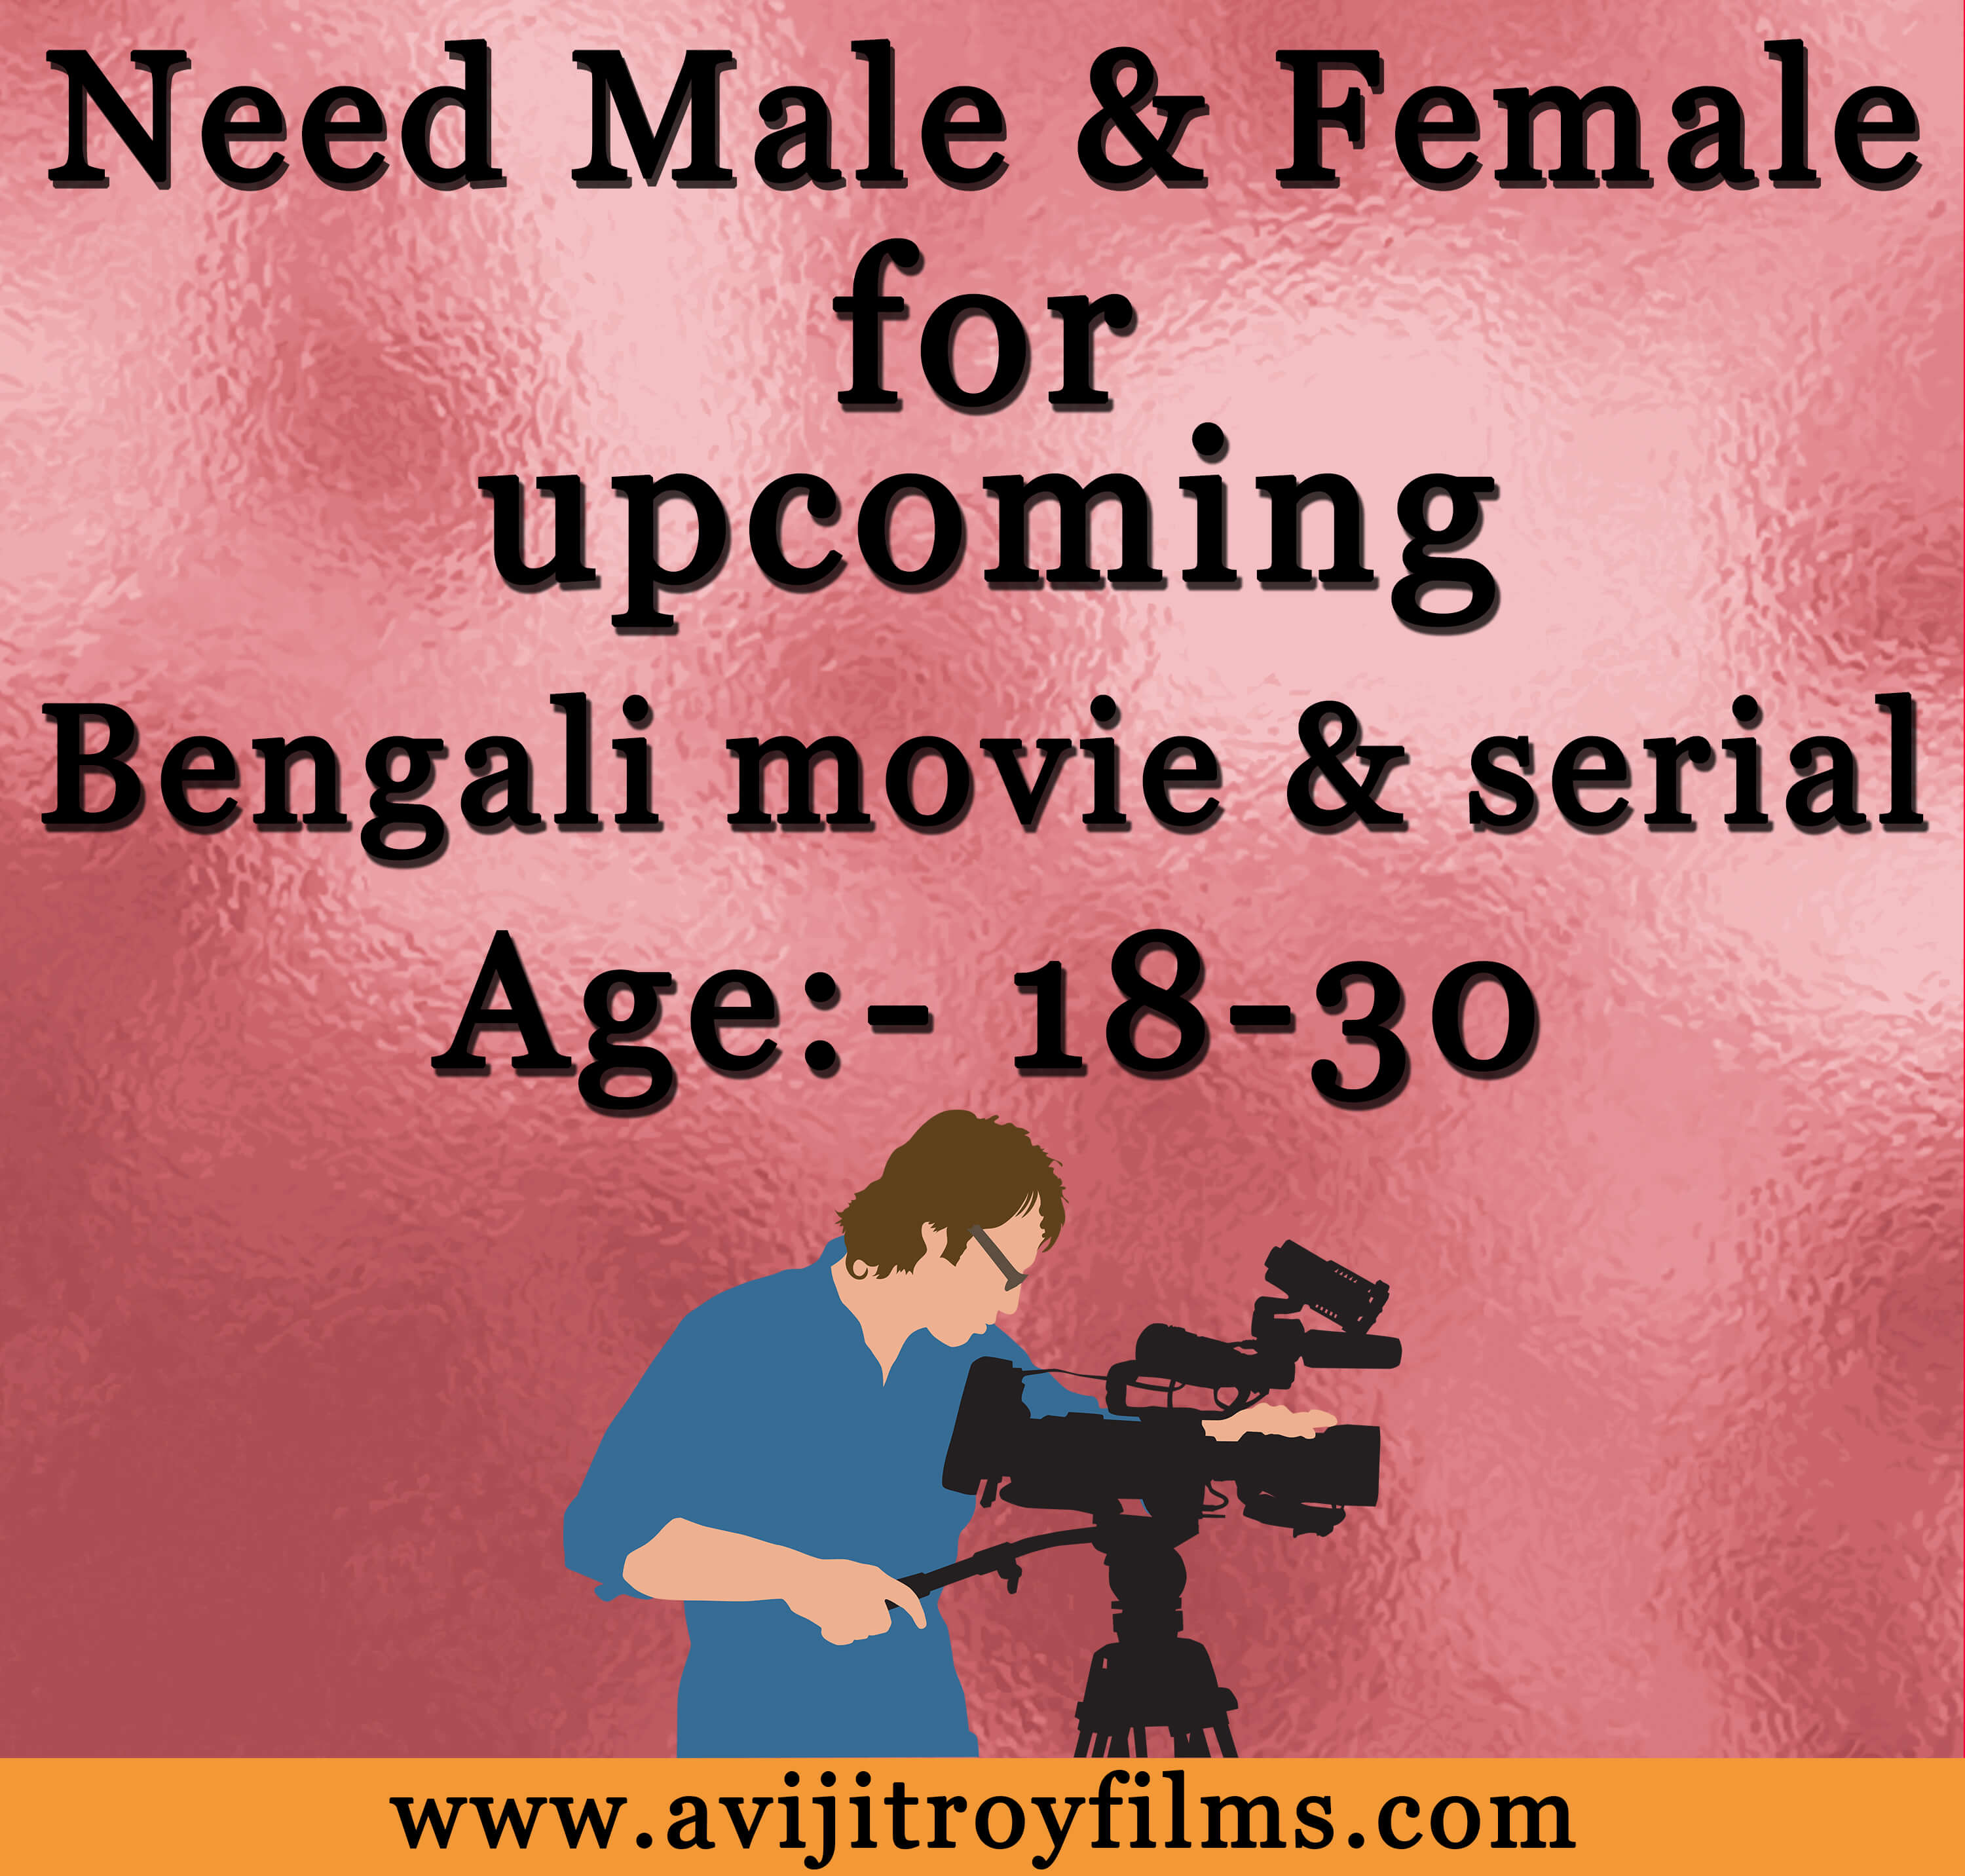 Bengali movie & serial